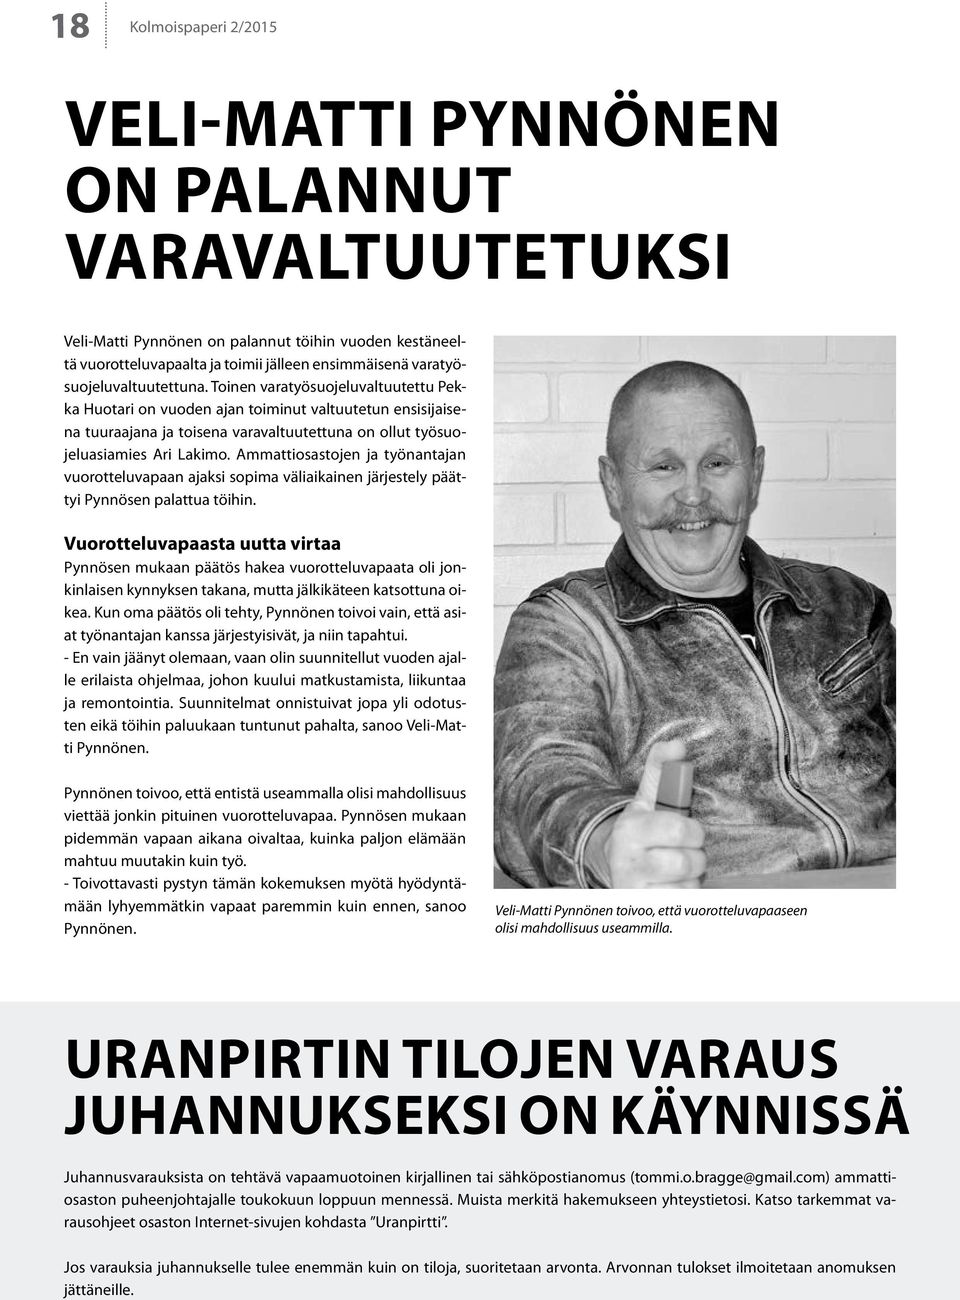 Toinen varatyösuojeluvaltuutettu Pekka Huotari on vuoden ajan toiminut valtuutetun ensisijaisena tuuraajana ja toisena varavaltuutettuna on ollut työsuojeluasiamies Ari Lakimo.